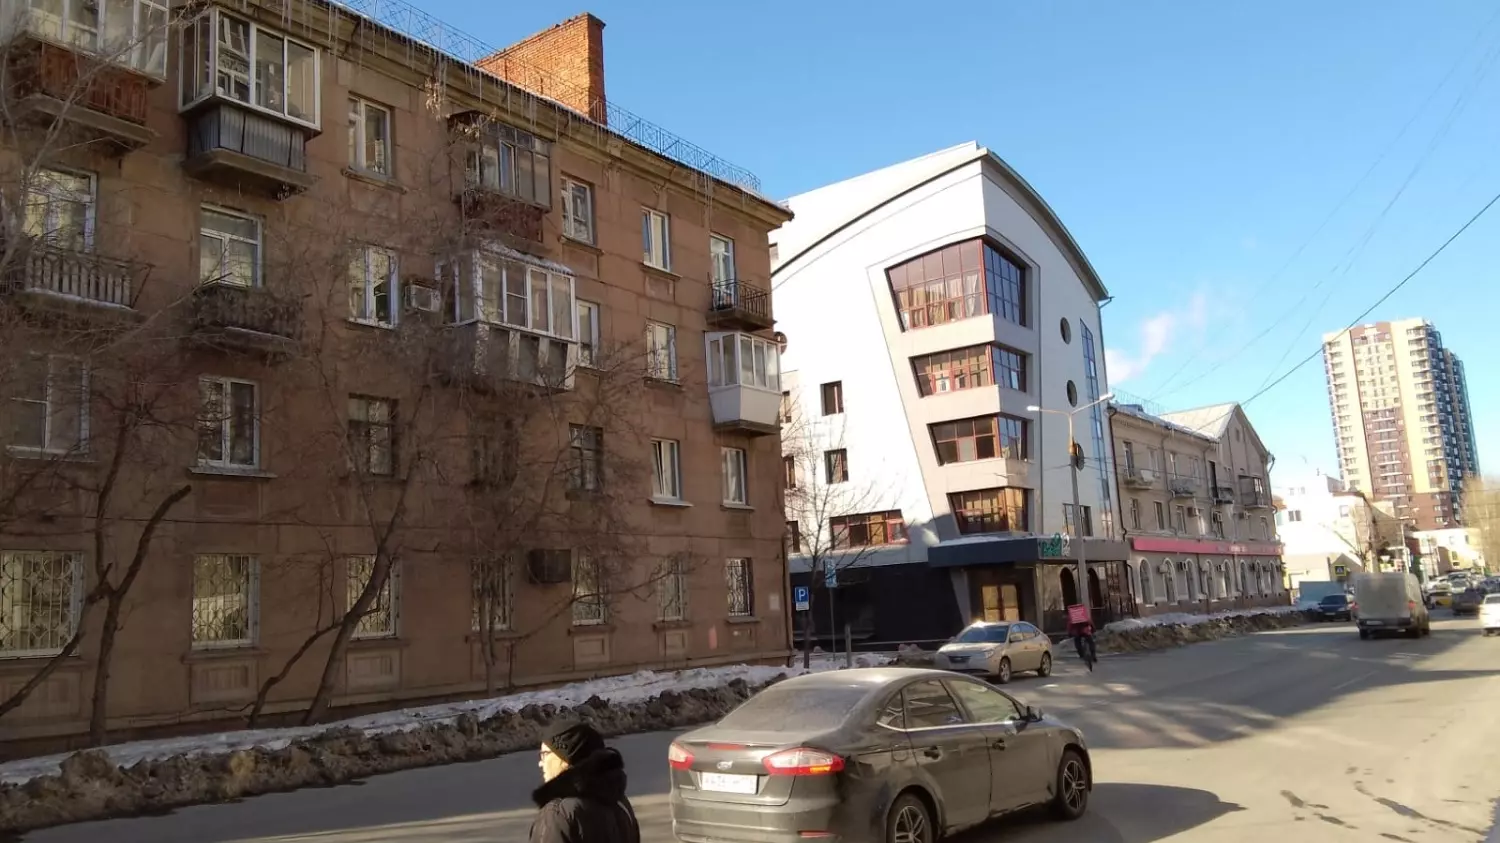 Офисная вставка современной архитектуры странно смотрится рядом с четырехэтажным жилым зданием времен СССР